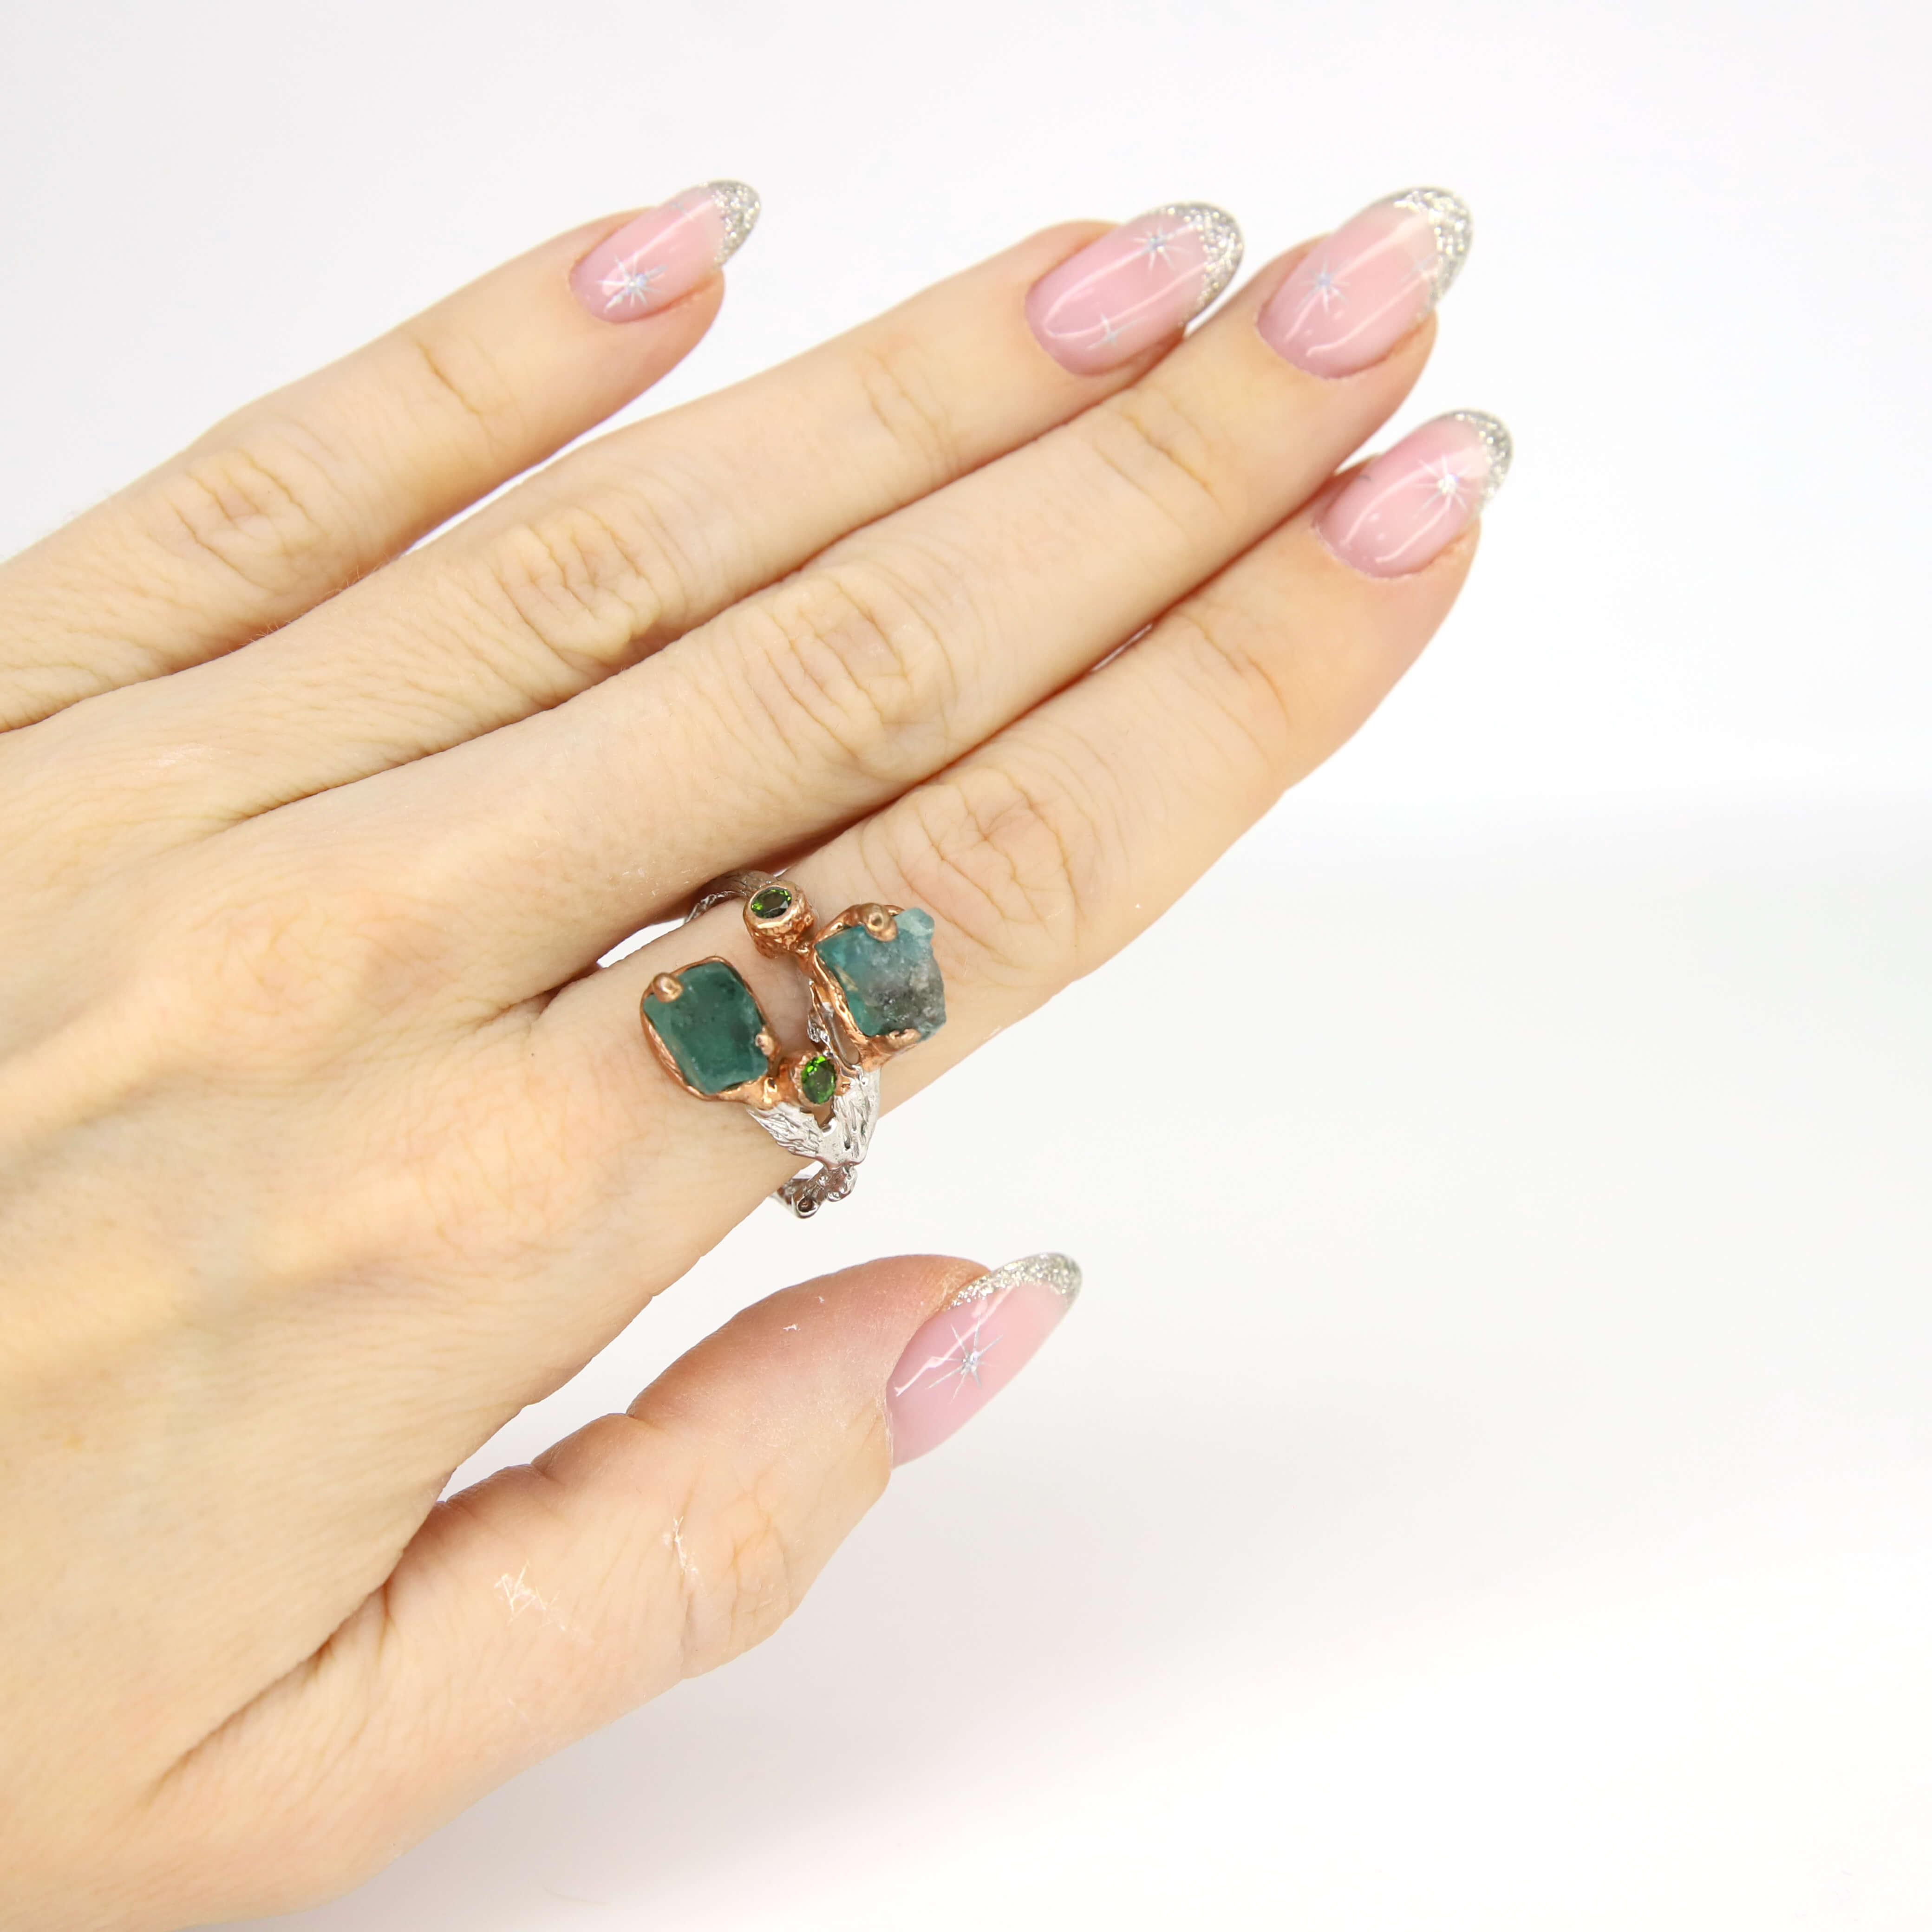 Кольцо 925 с апатитами размер 18,5, цвет Зеленый, фото 1